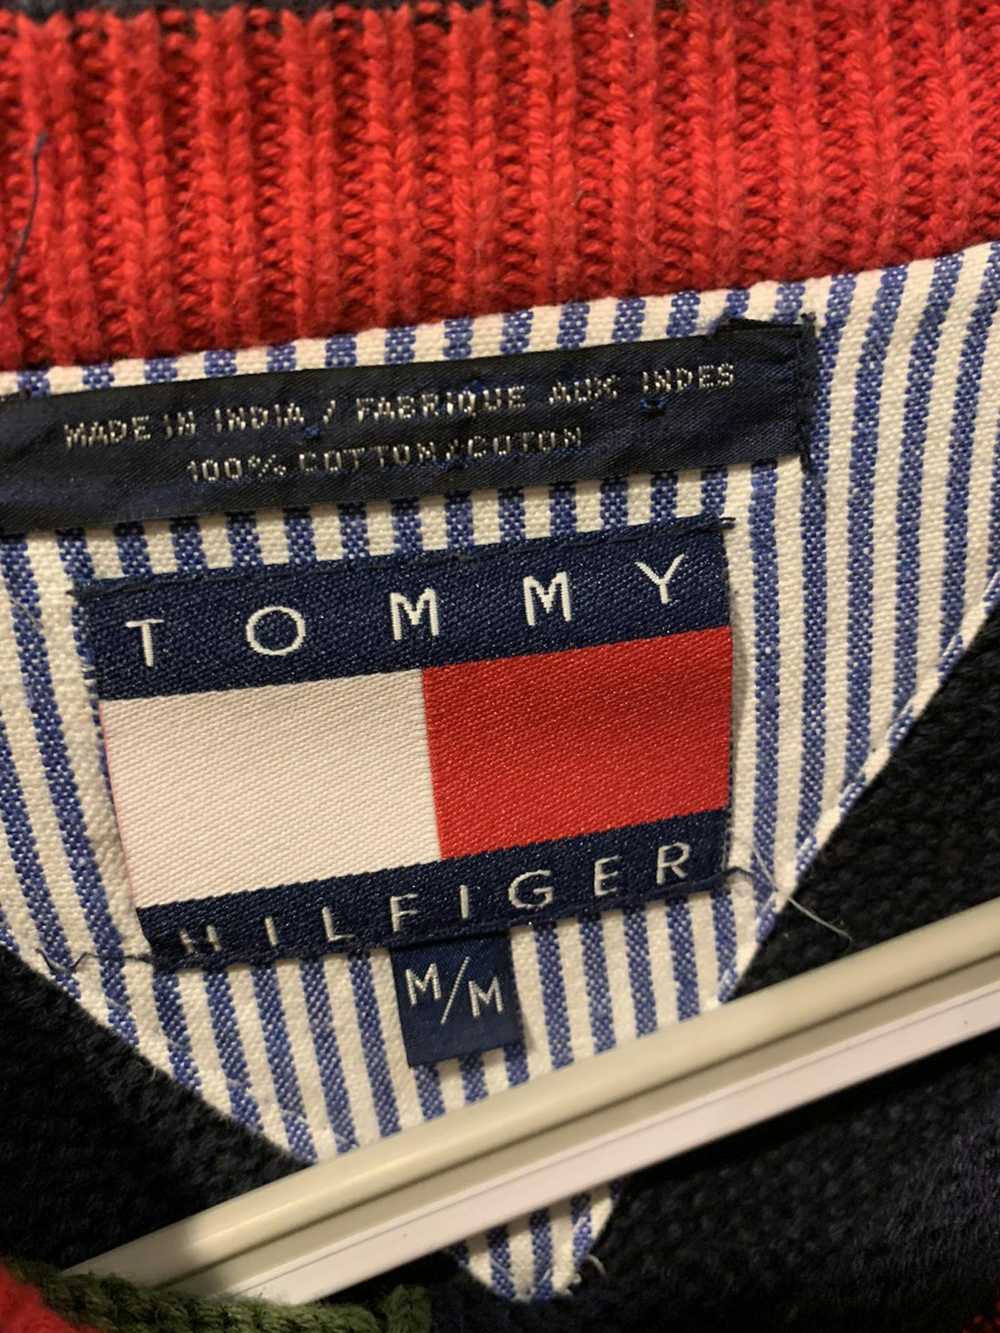 Tommy Hilfiger Vintage Tommy Hilfiger Red Long-Sl… - image 2